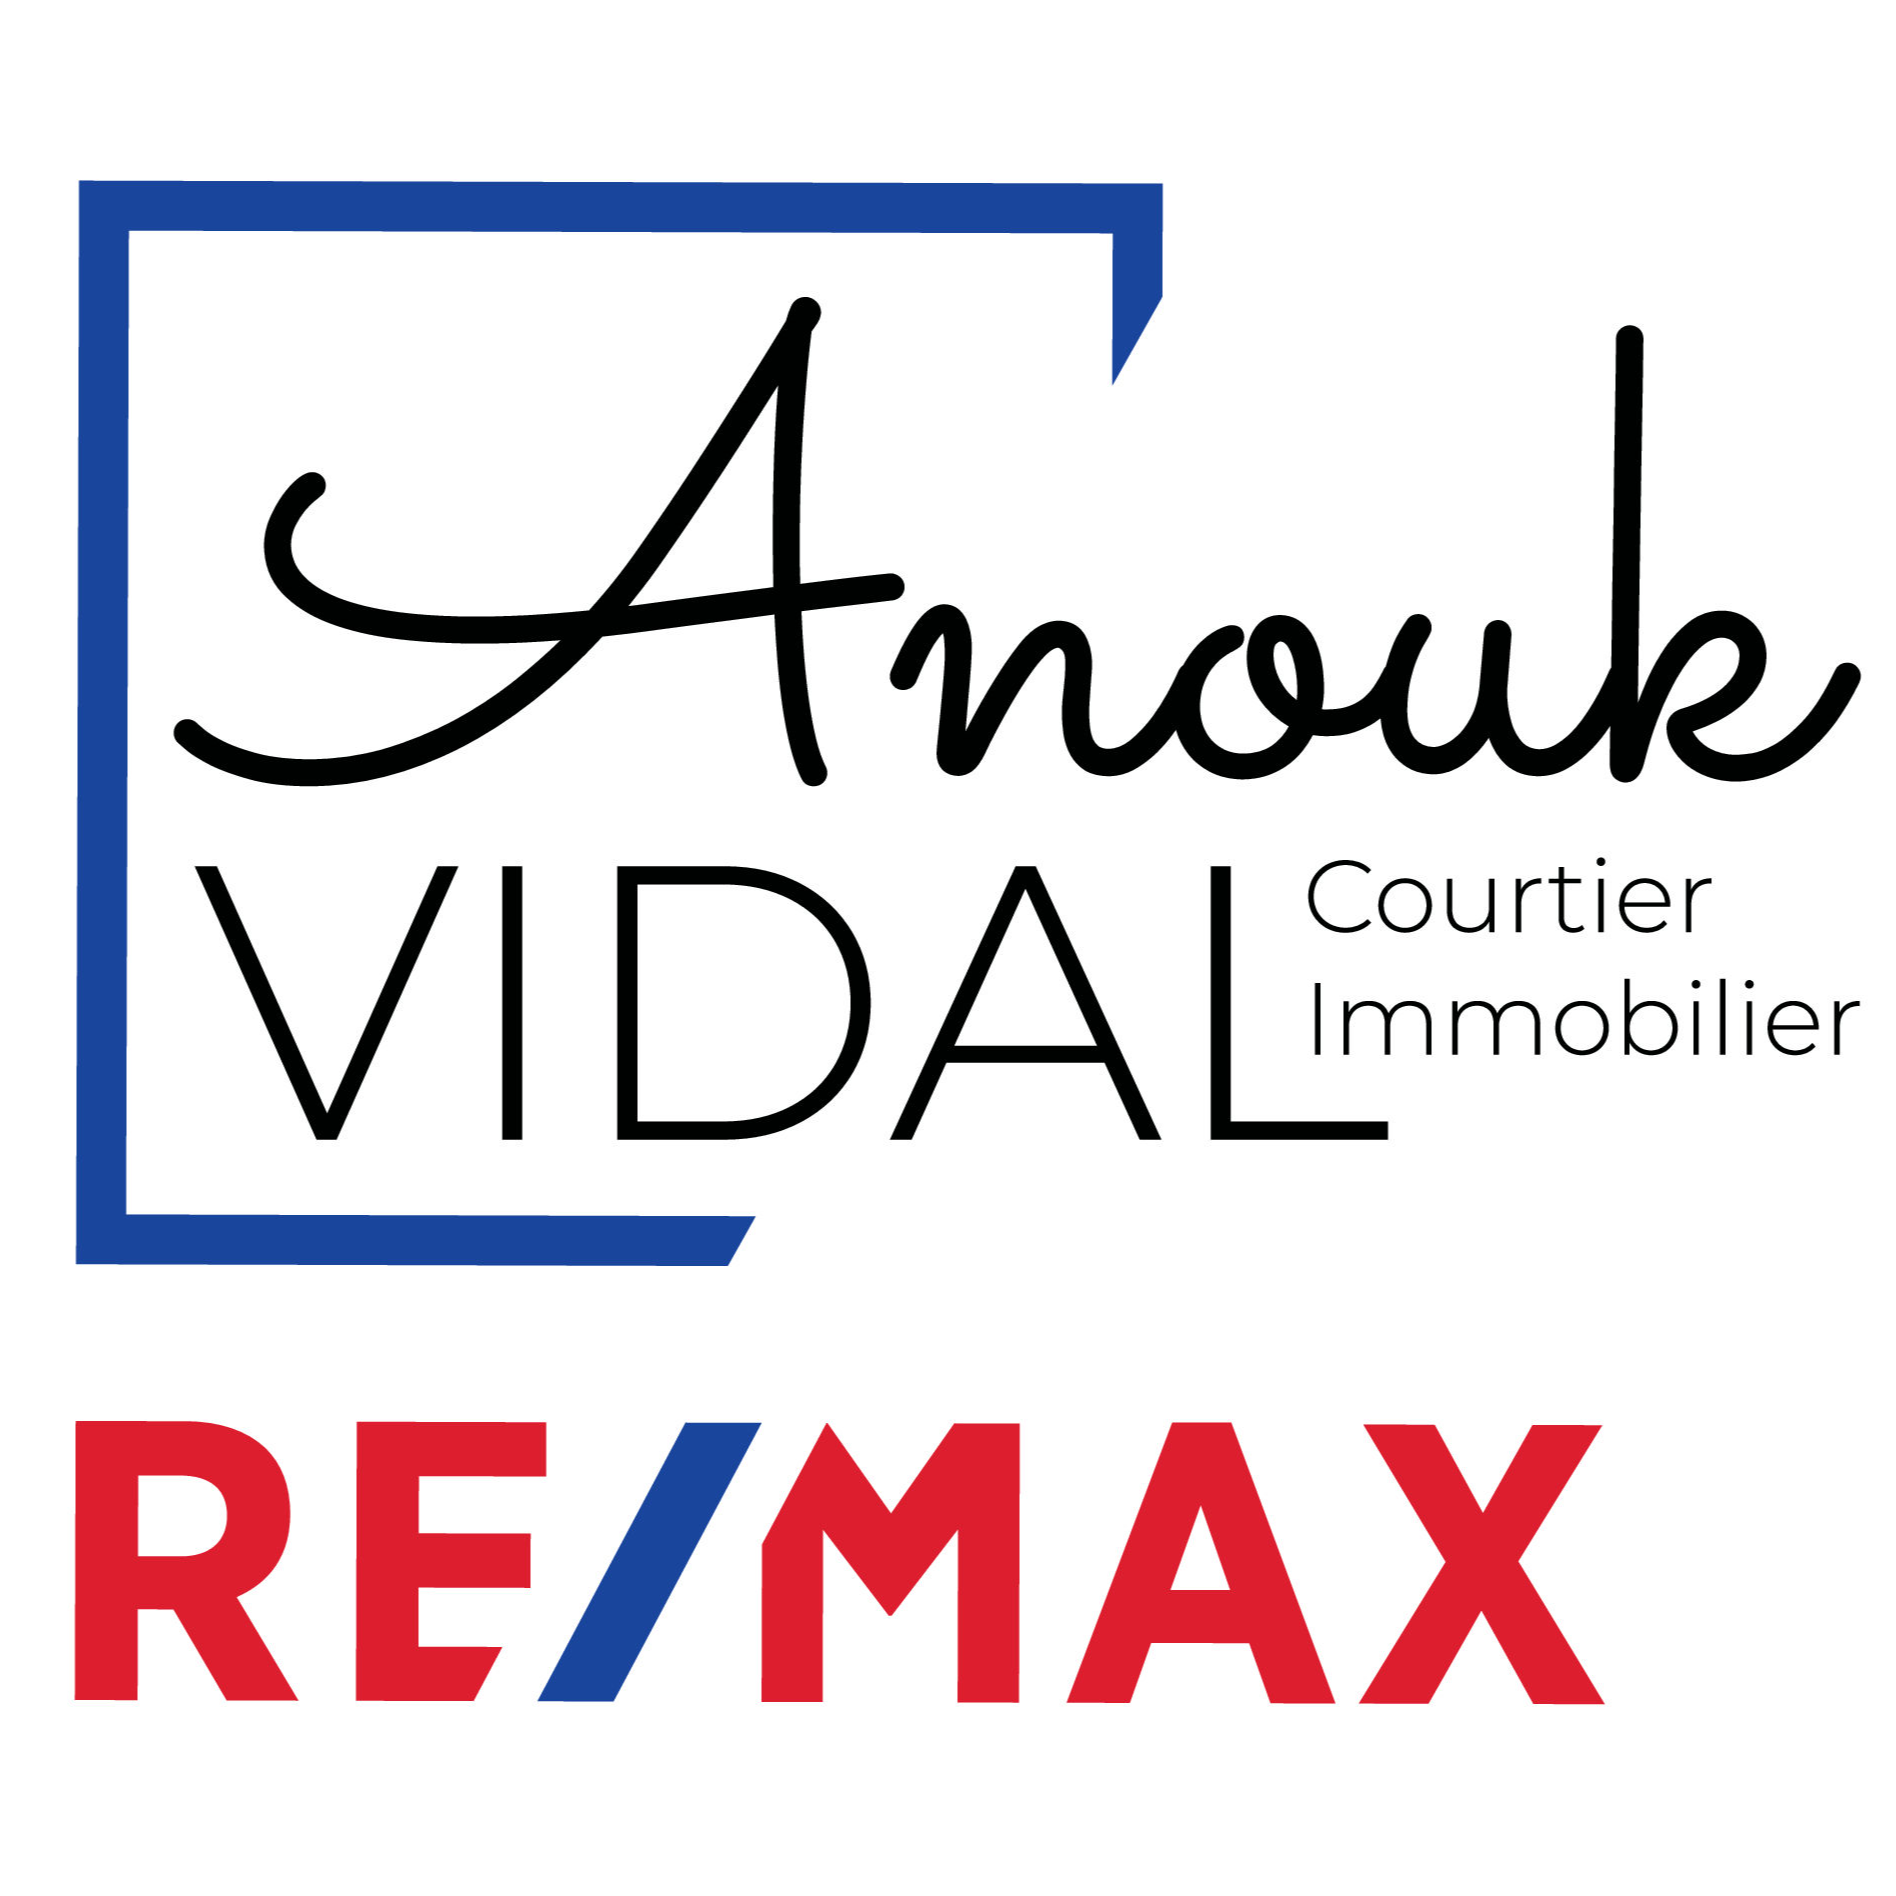 Anouk Vidal - Courtier immobilier Saint-Jérôme - Prévost - Saint-Jérôme, QC J5L 1W9 - (514)216-2611 | ShowMeLocal.com